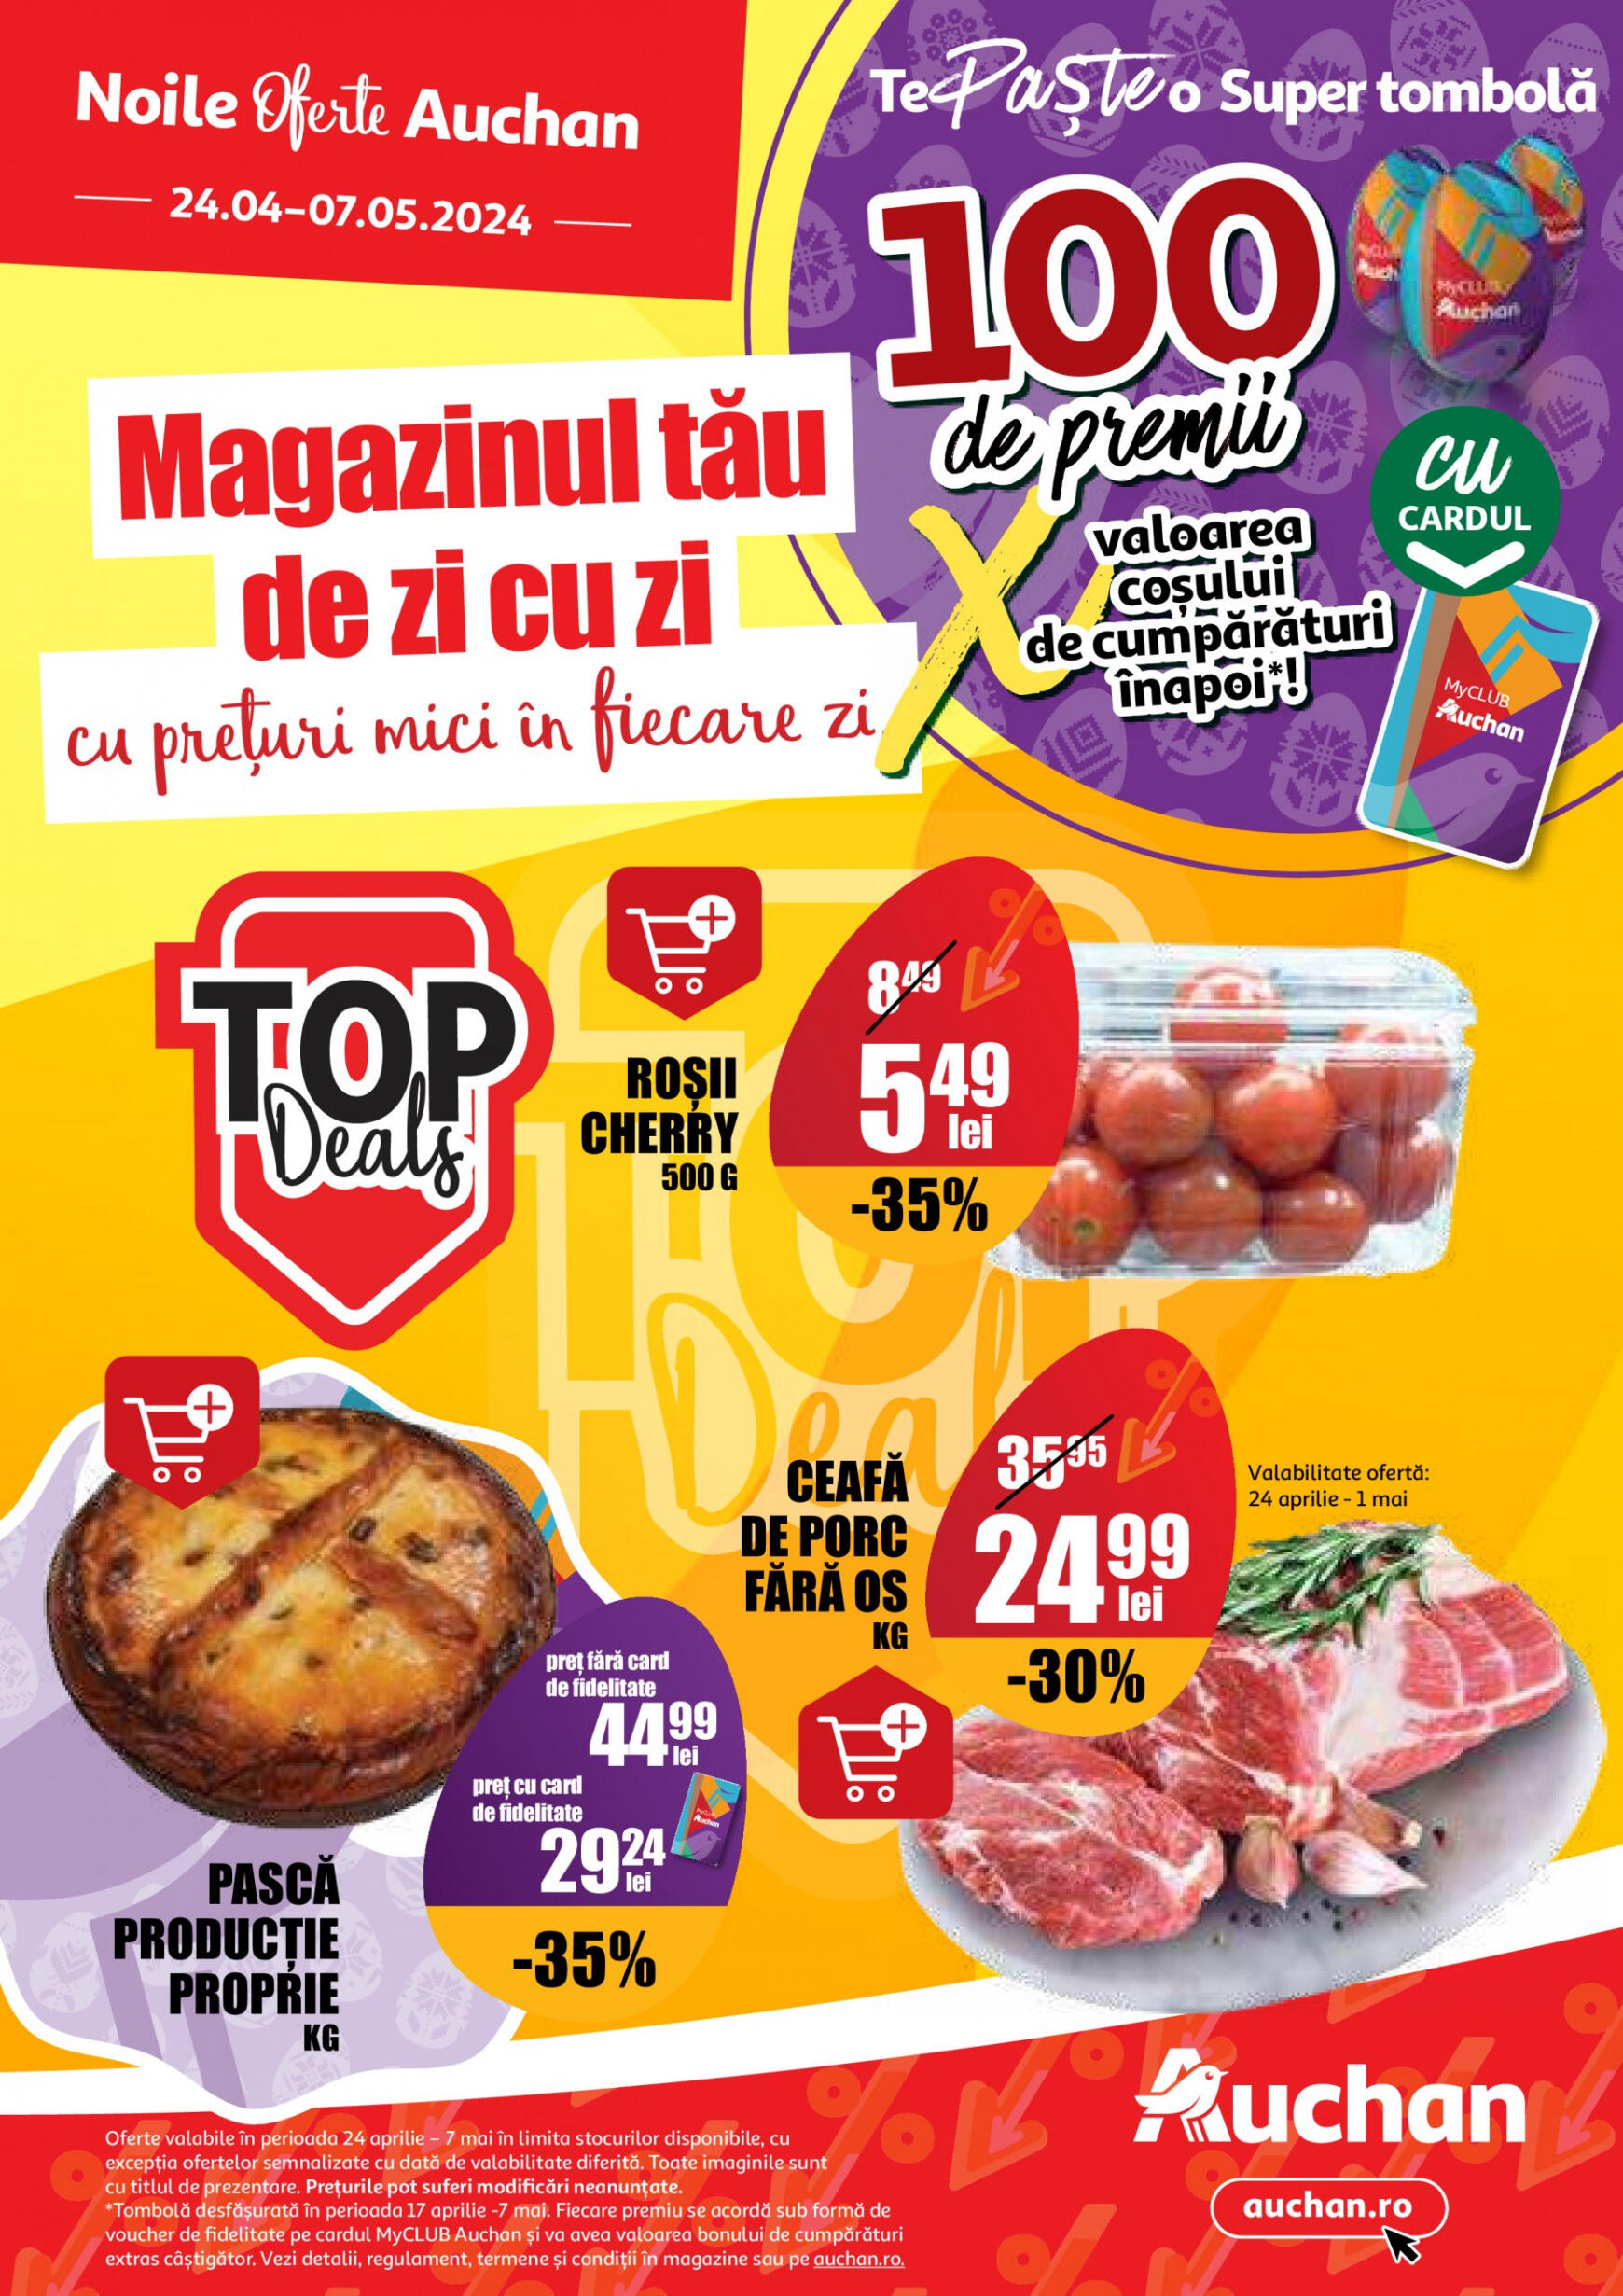 auchan - Catalog nou Auchan 24.04. - 07.05. - page: 1